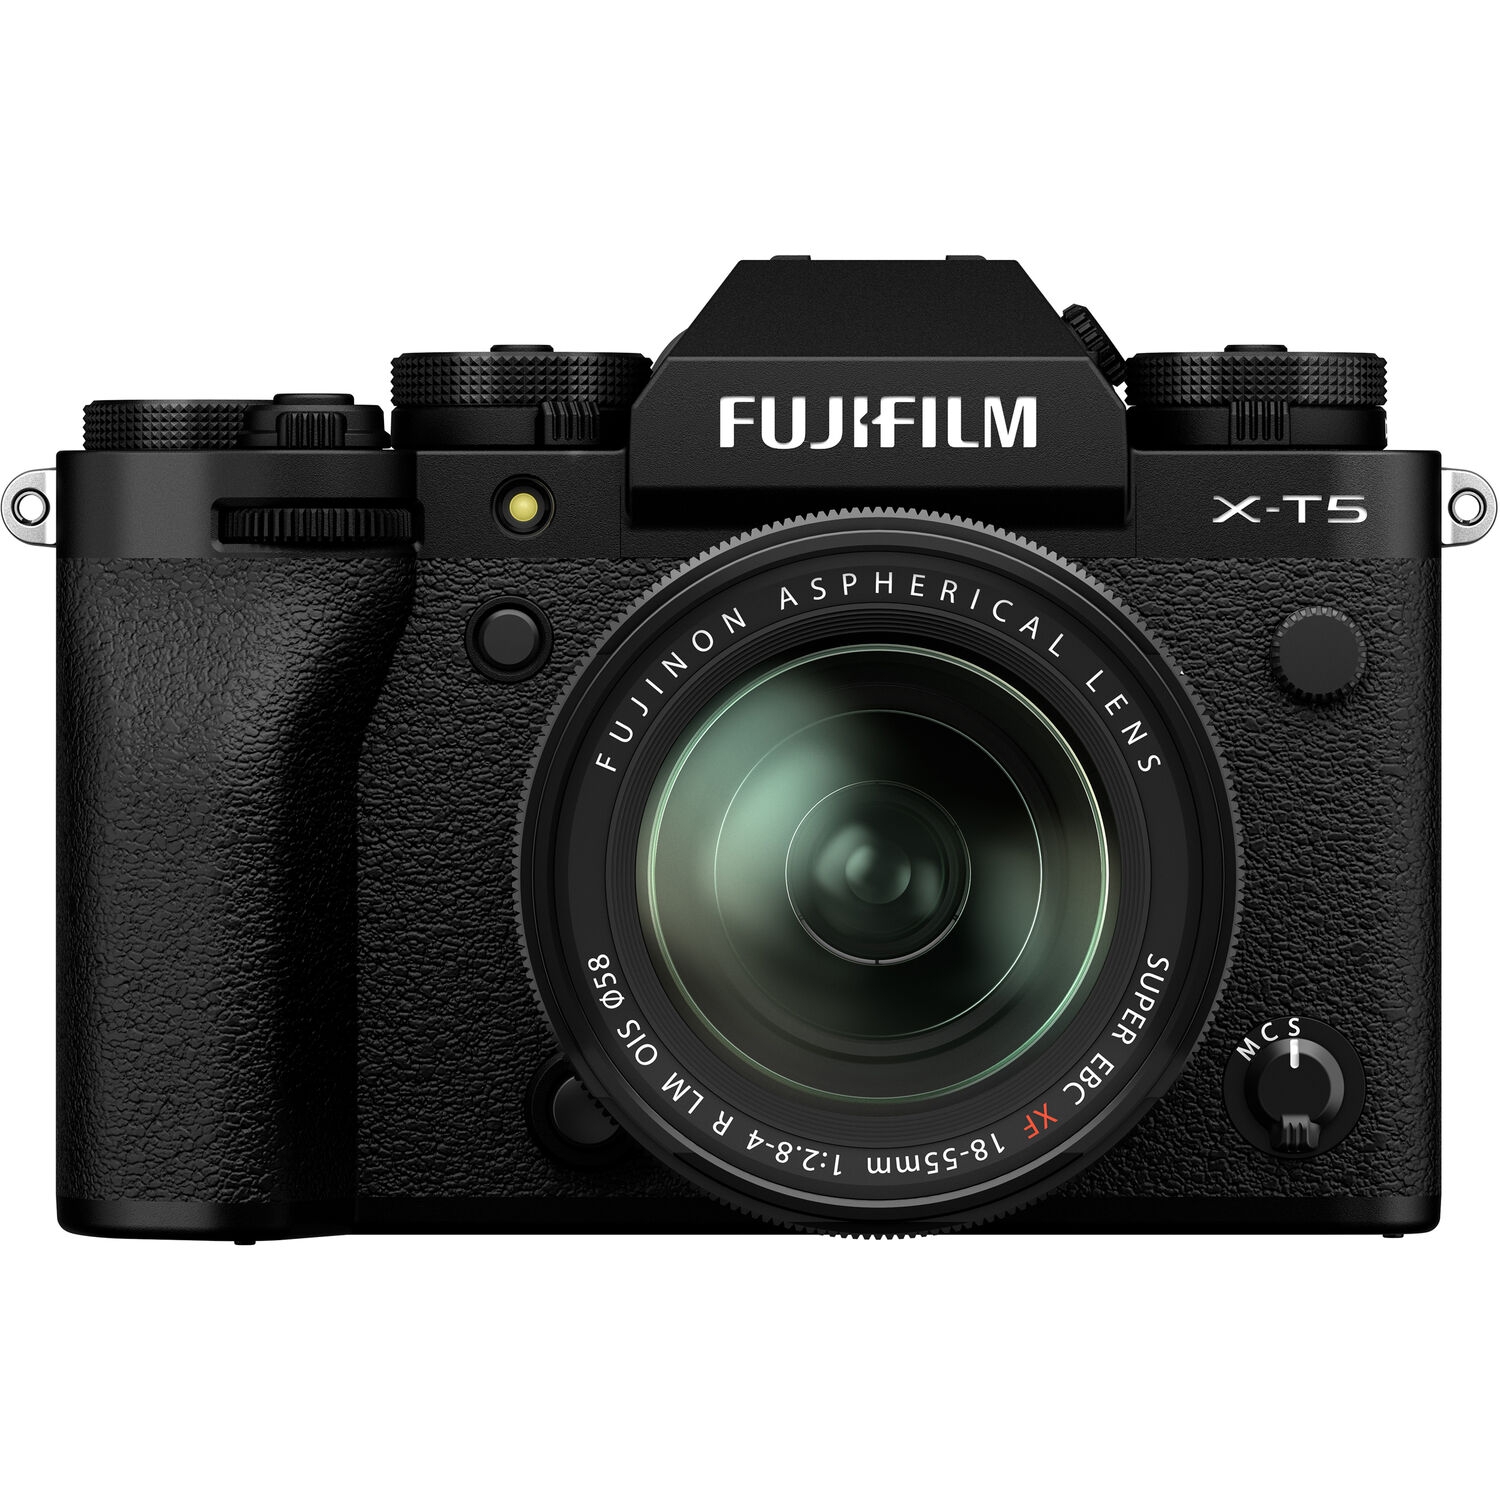 Fujifilm X-T5 schwarz inkl. XF 18-55mm 1:2,8-4,0 R LM OIS